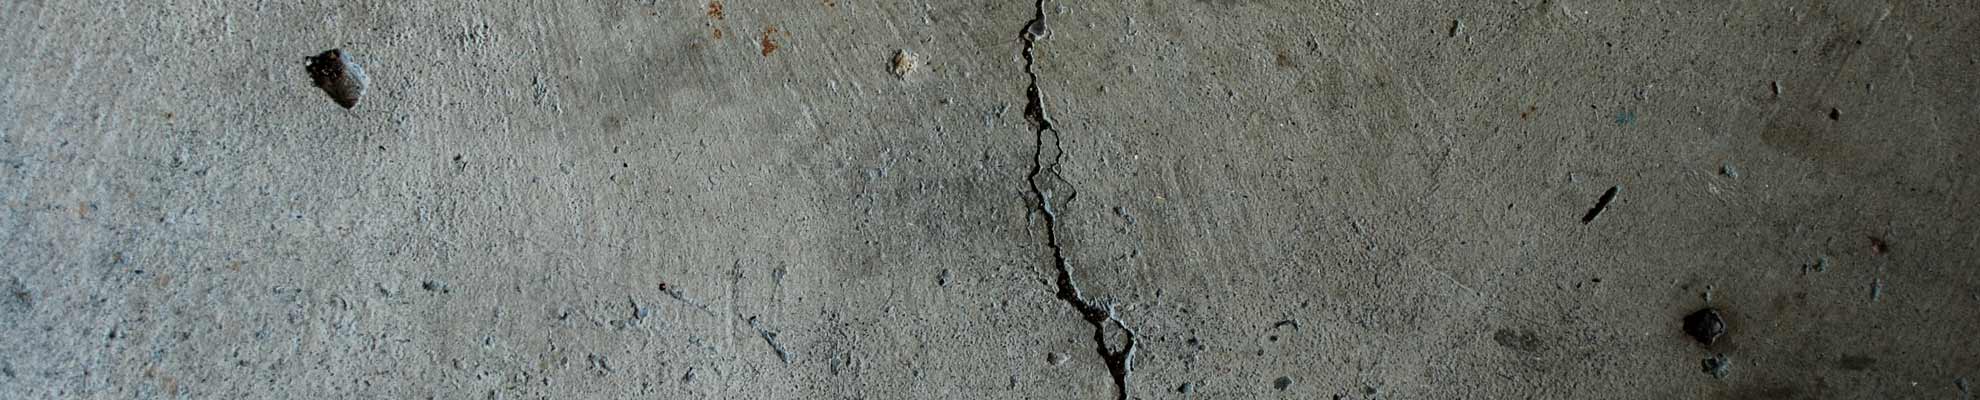 Concrete Crack Before Repair